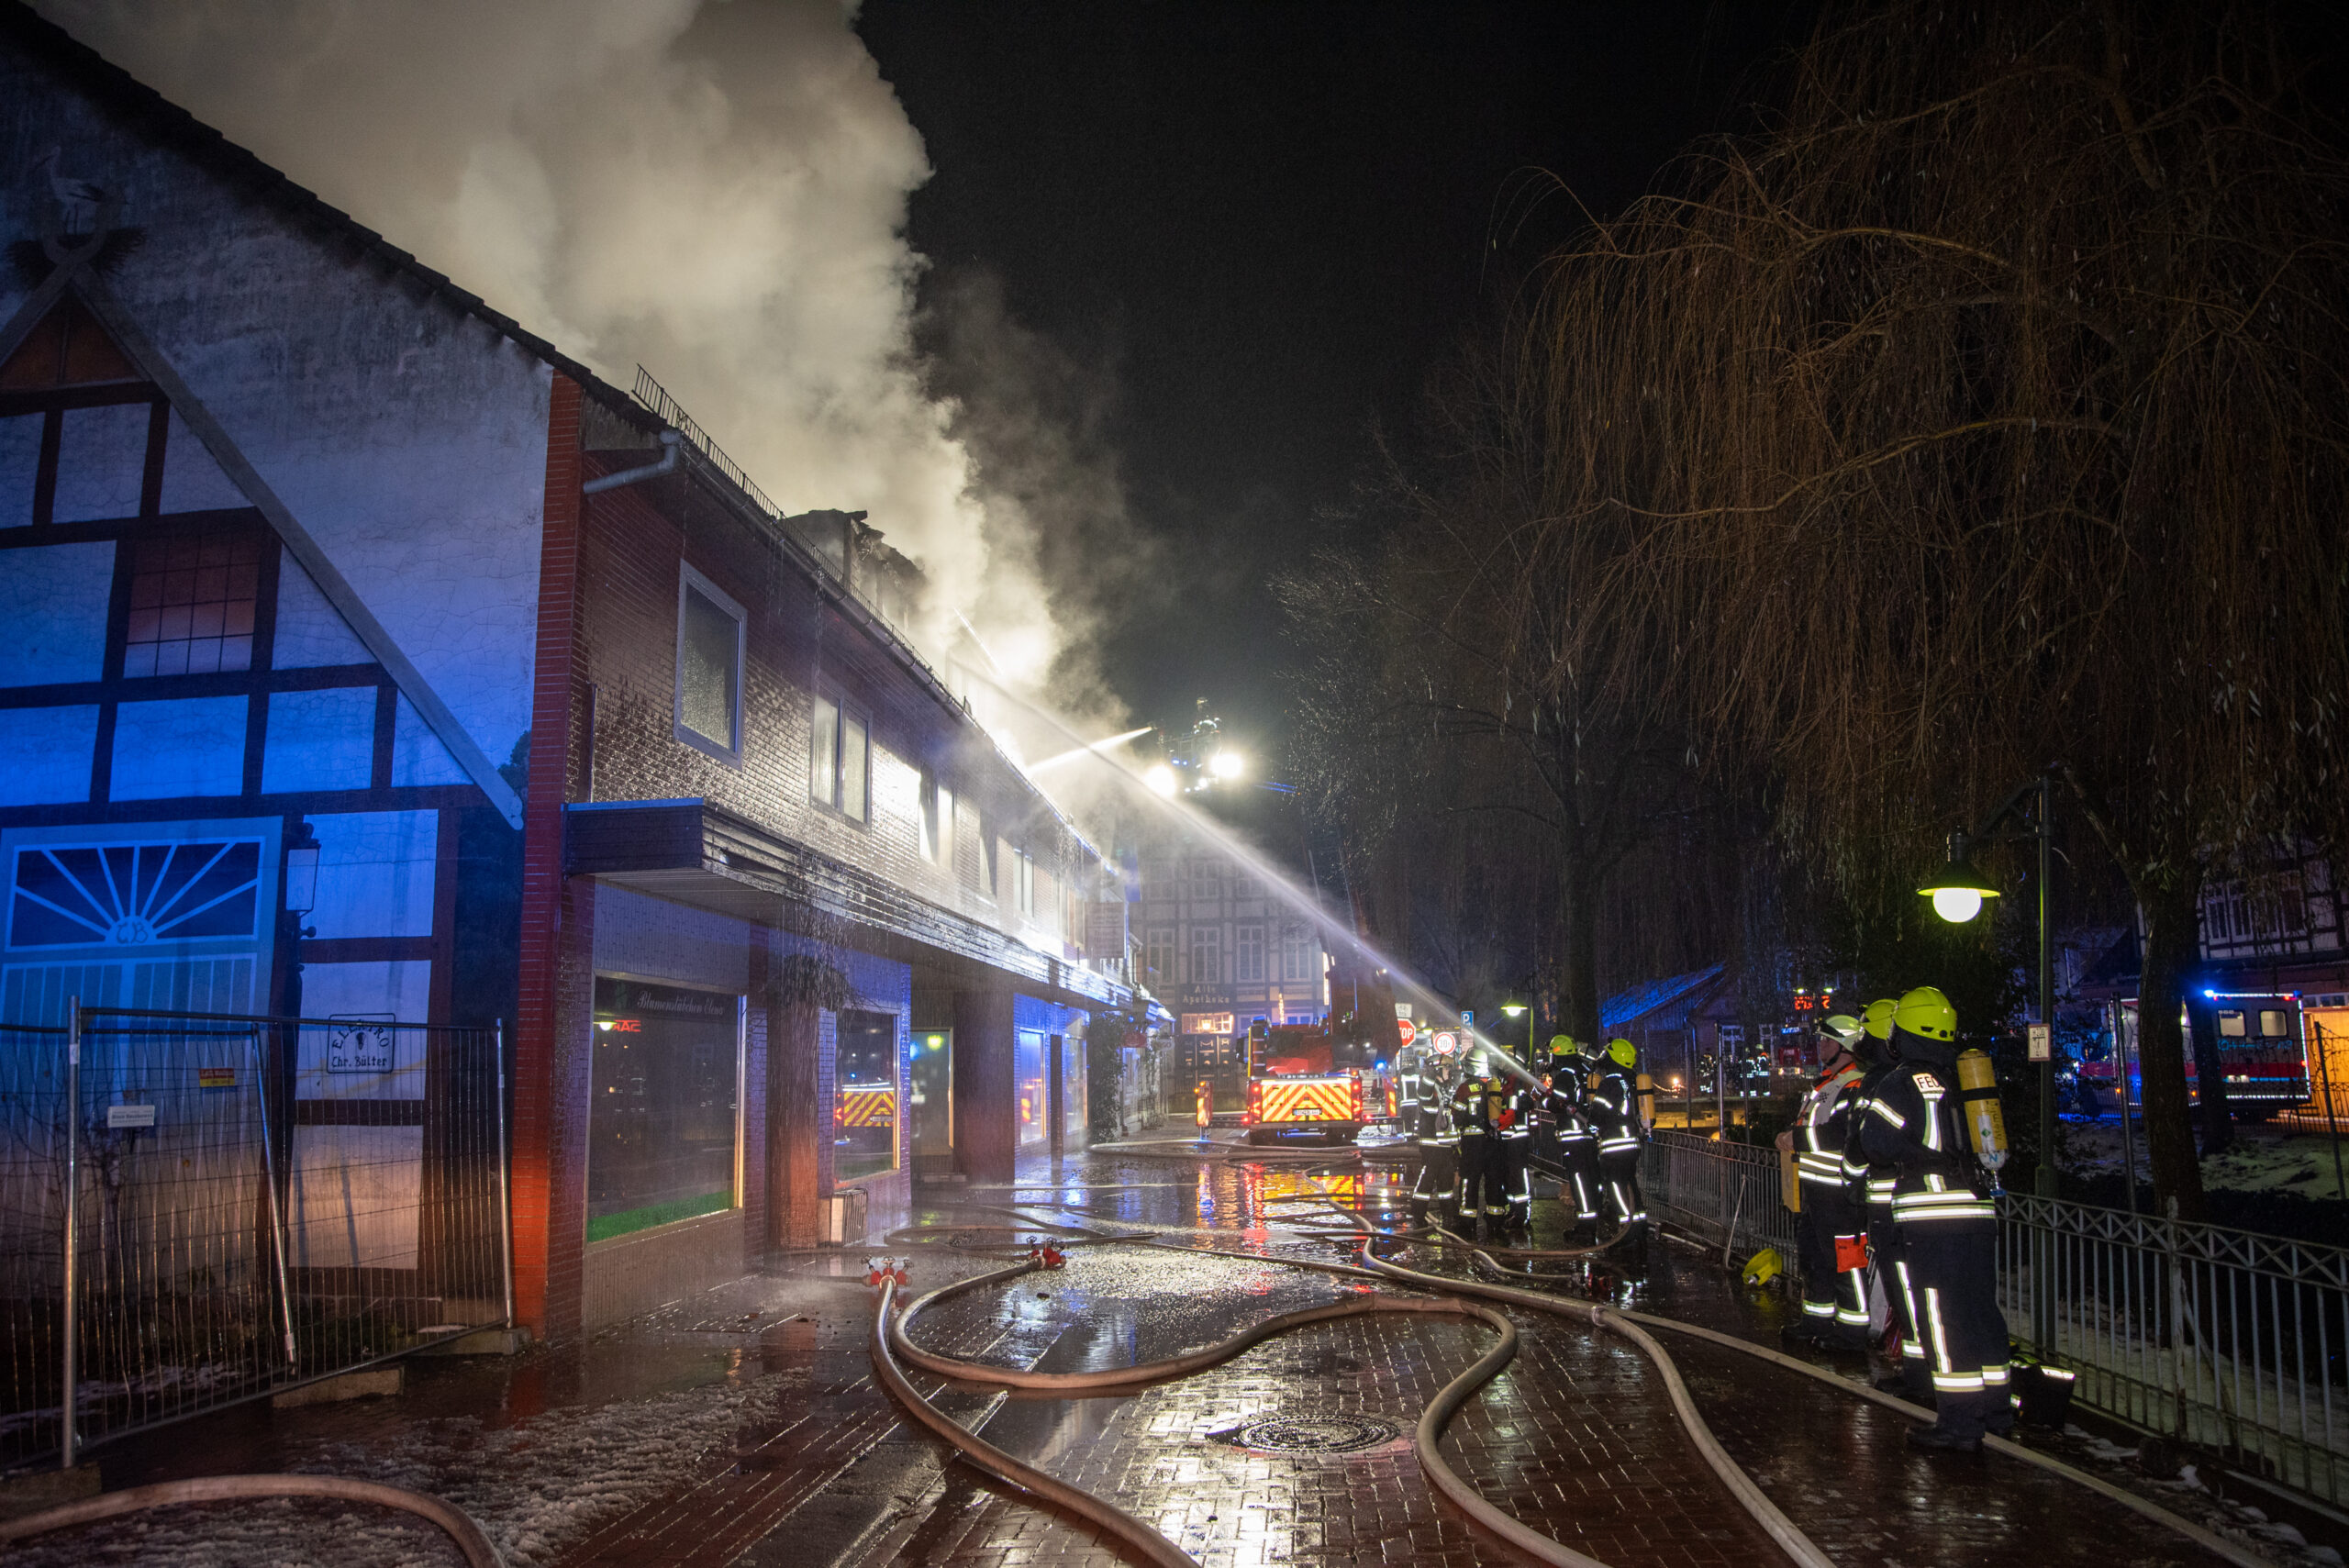 Wohnhaus in Rotenburg-Wümme in Flammen – Bewohner und Feuerwehrmann verletzt